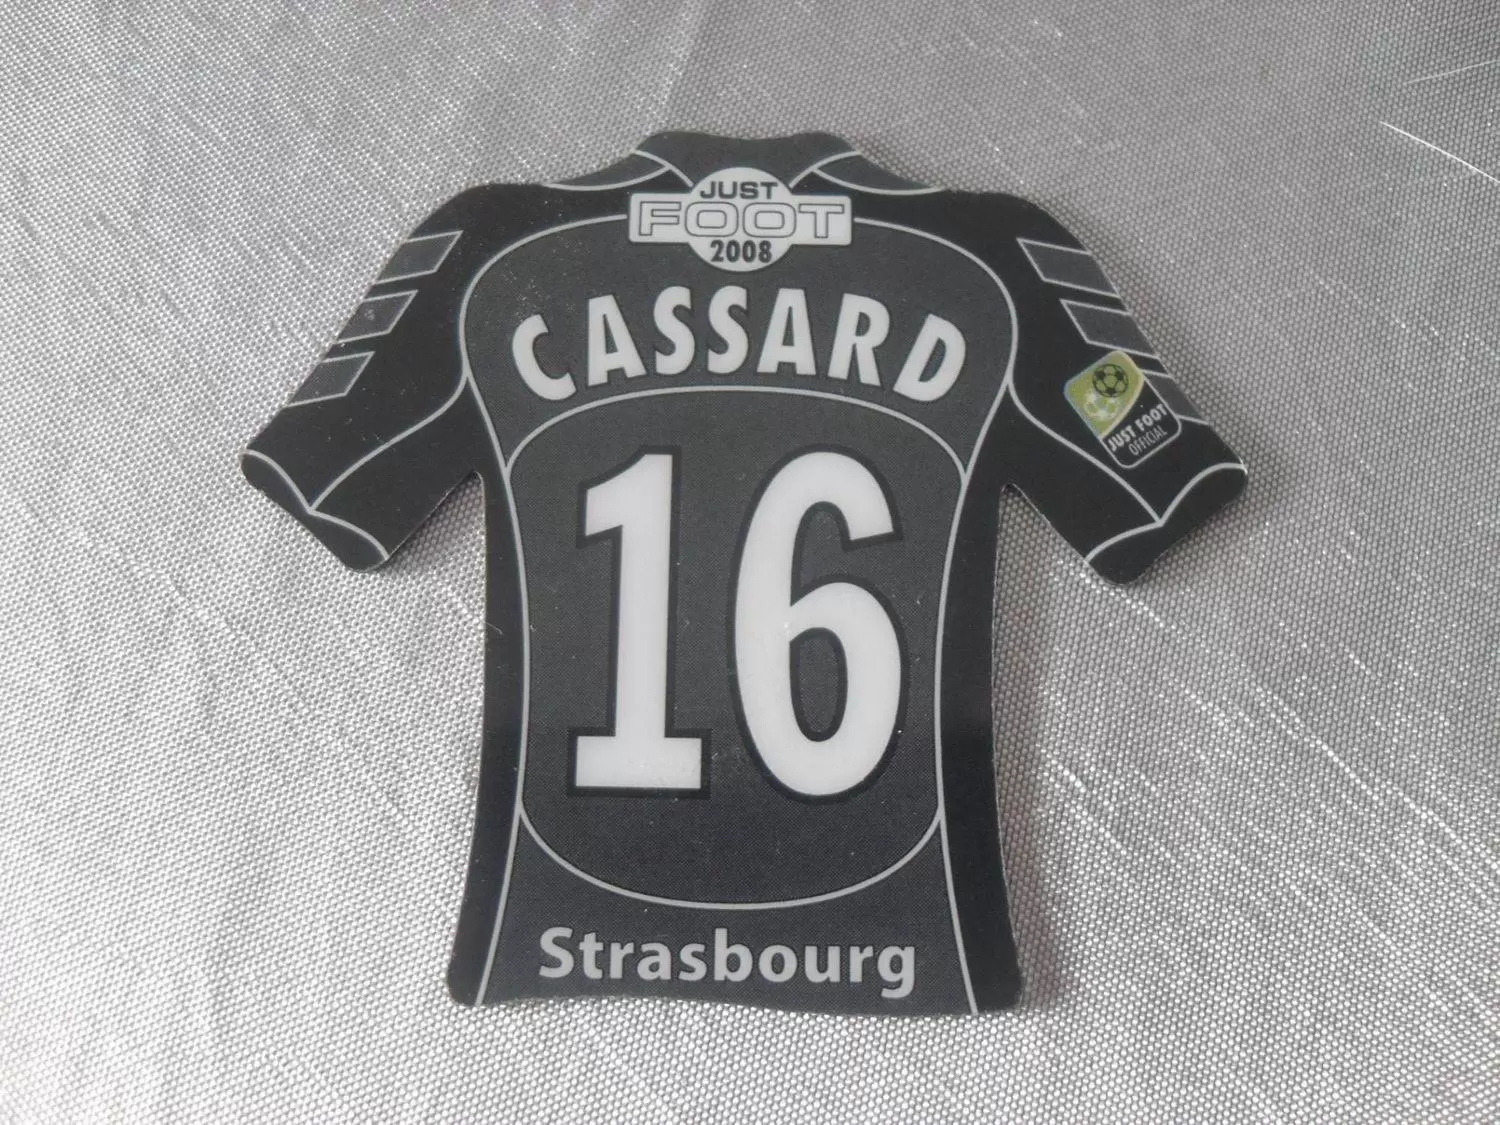 Just Foot 2008 - Strasbourg 16 - Cassard